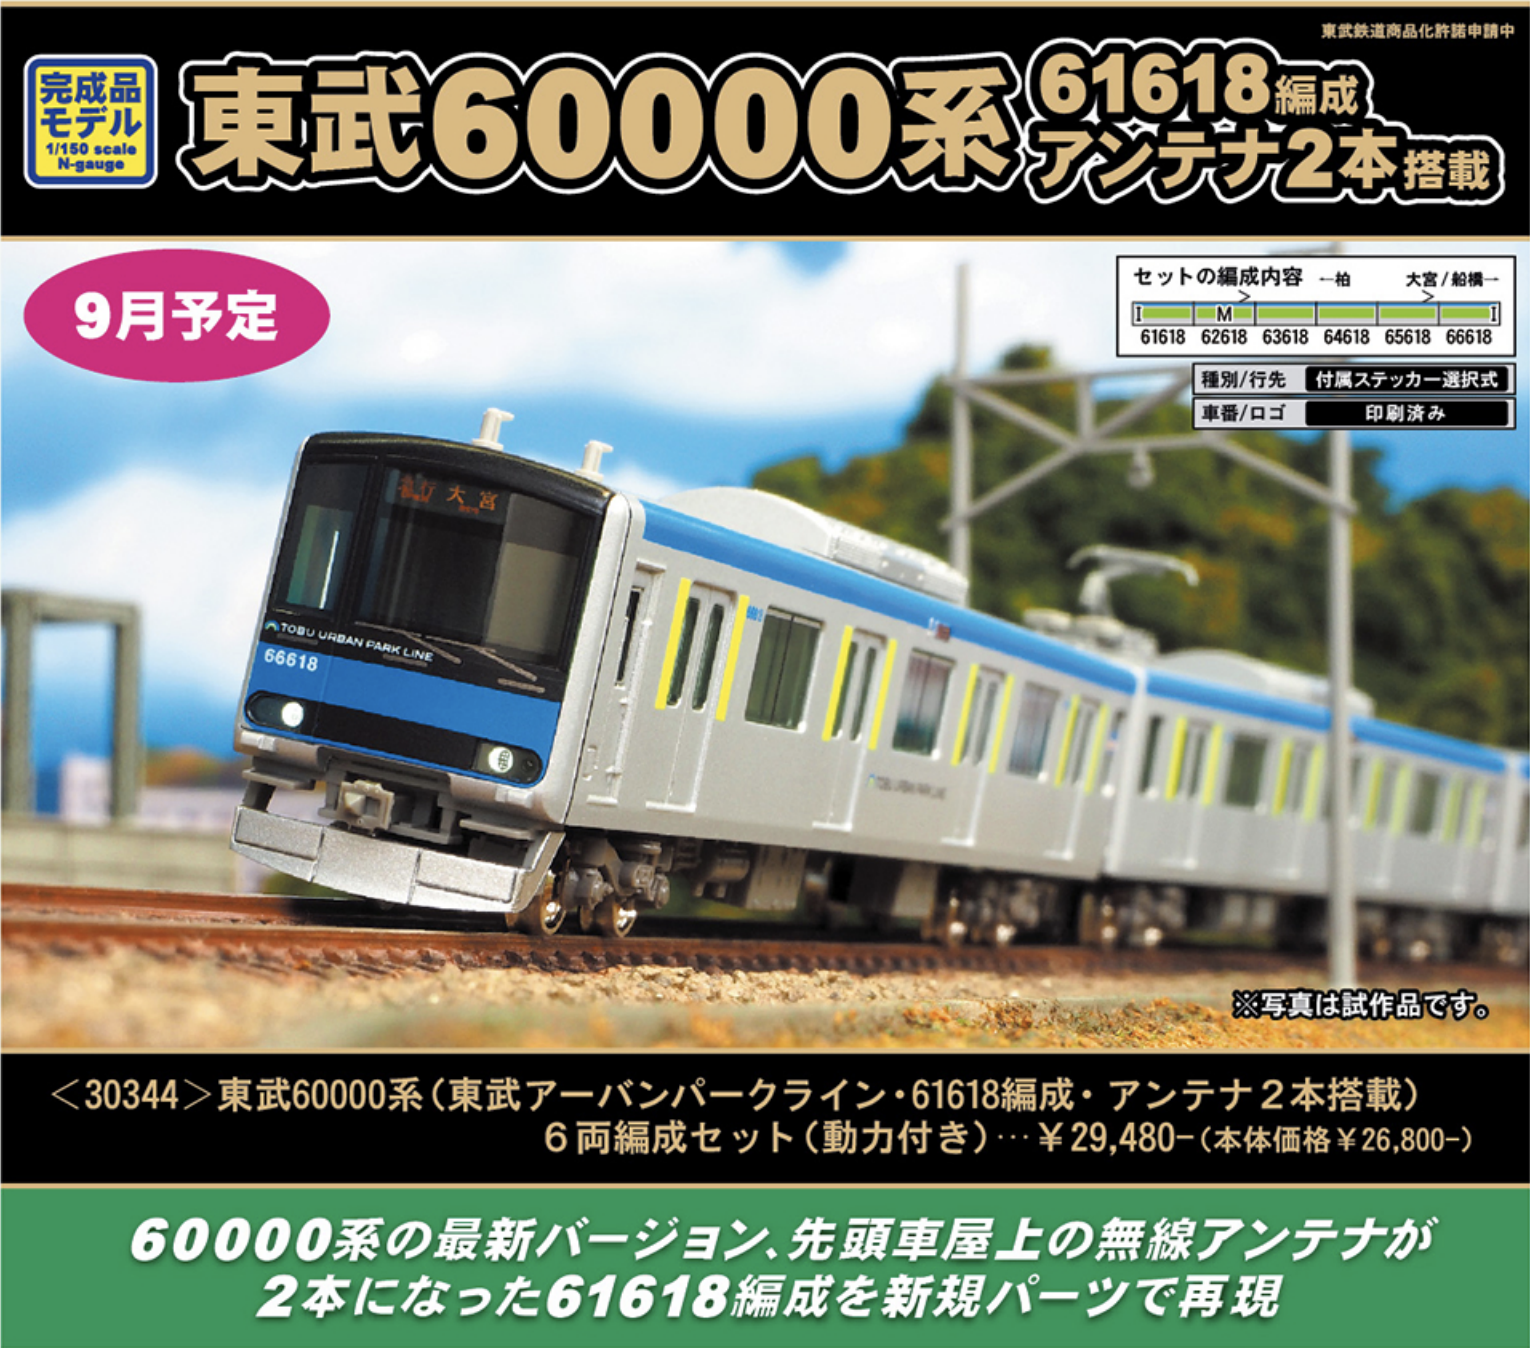 グリーンマックス東武鉄道系アンテナ2本搭載月発売